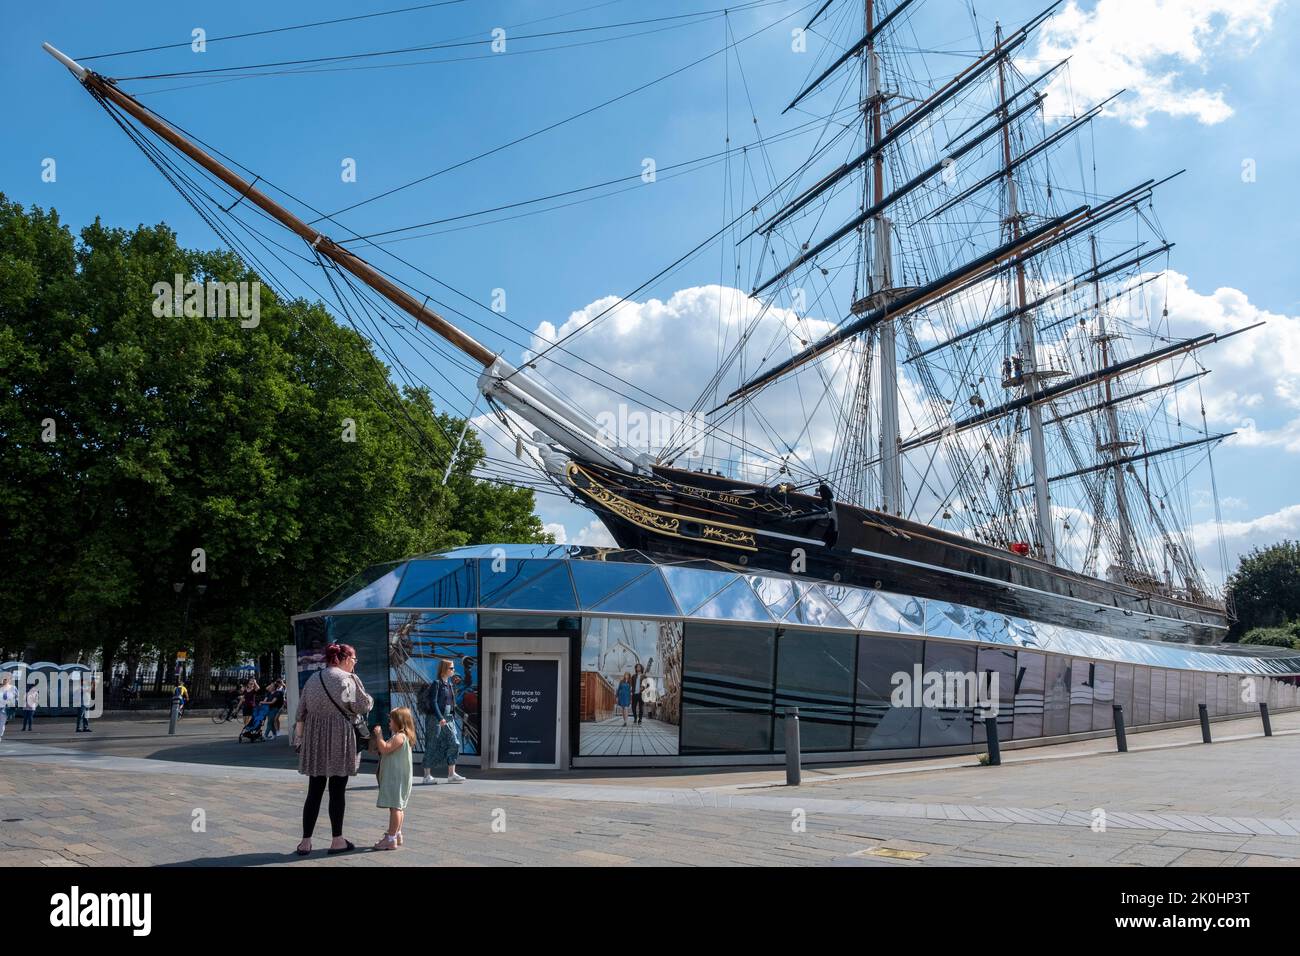 Navire historique Cutty Sark et attraction primée, Greenwich, Londres. Banque D'Images